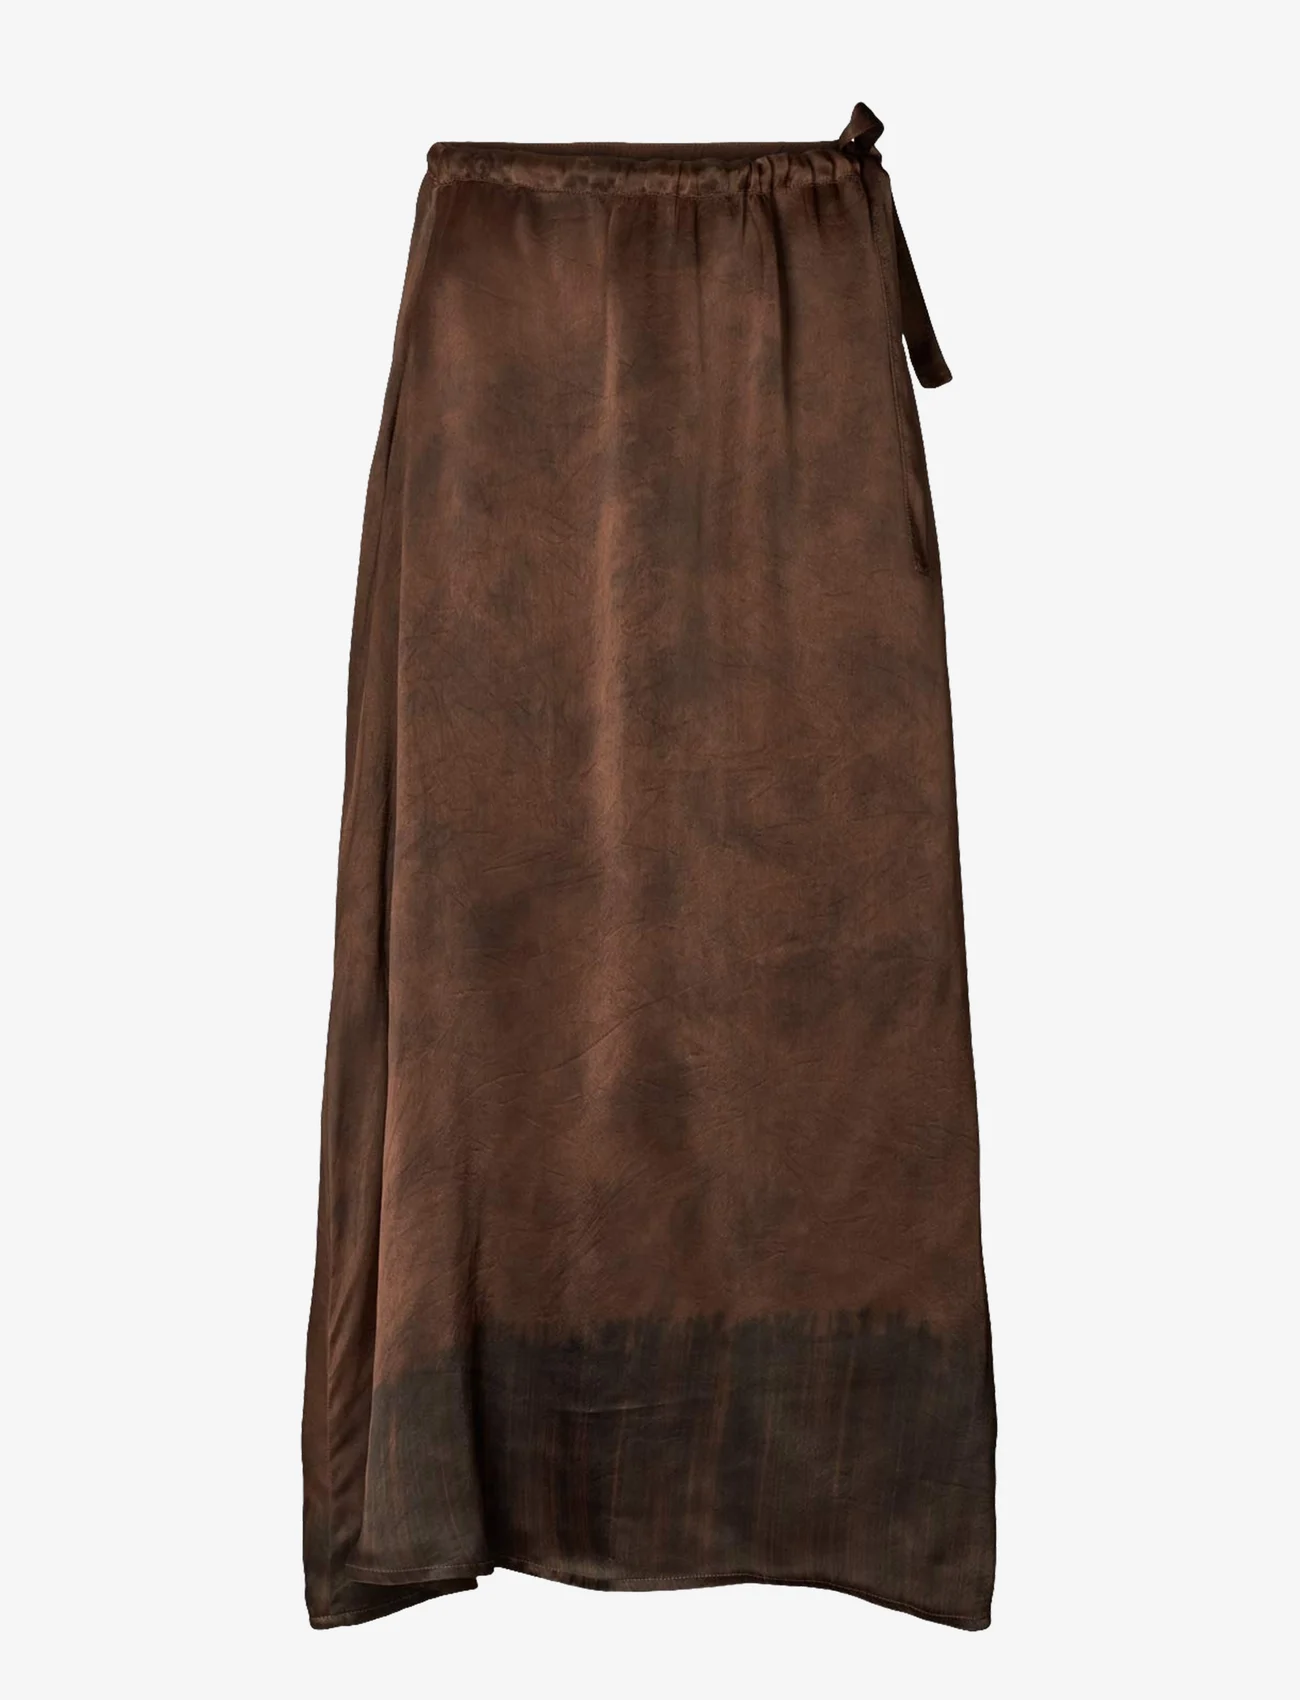 Rabens Saloner - Zu - Framework drawstring skirt - midi kjolar - brown combo - 0